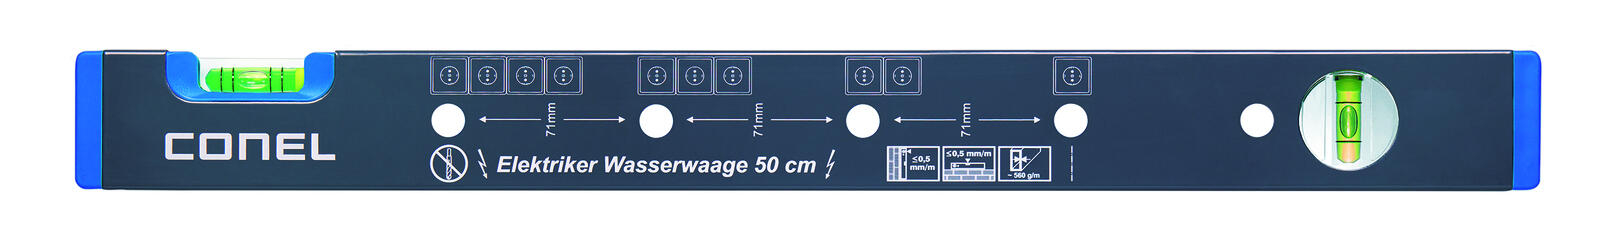 Wasserwaage TOOLS-CTOOLWAAG500EL-